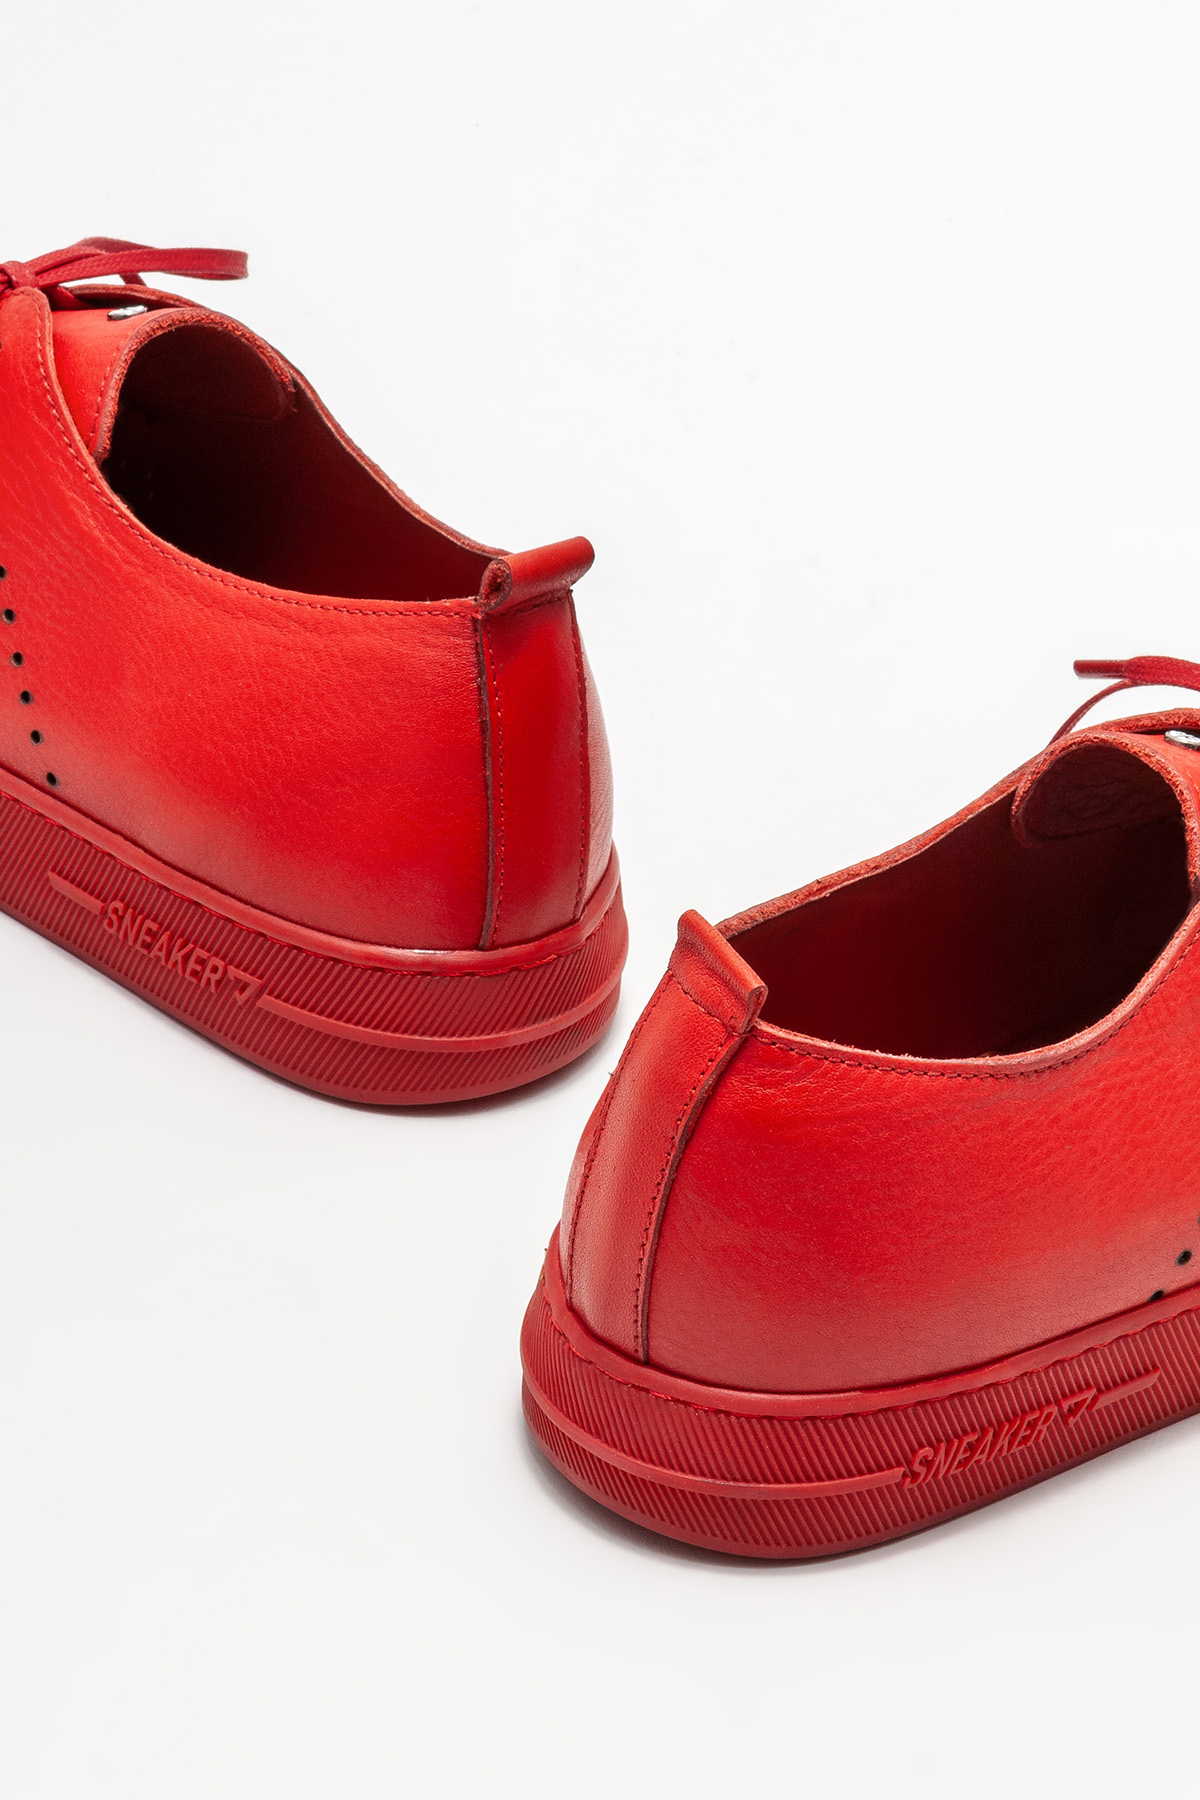 Kırmızı Deri Erkek Spor Ayakkabı Satın Al! POPAS-03 Fiyatı | Elle Shoes